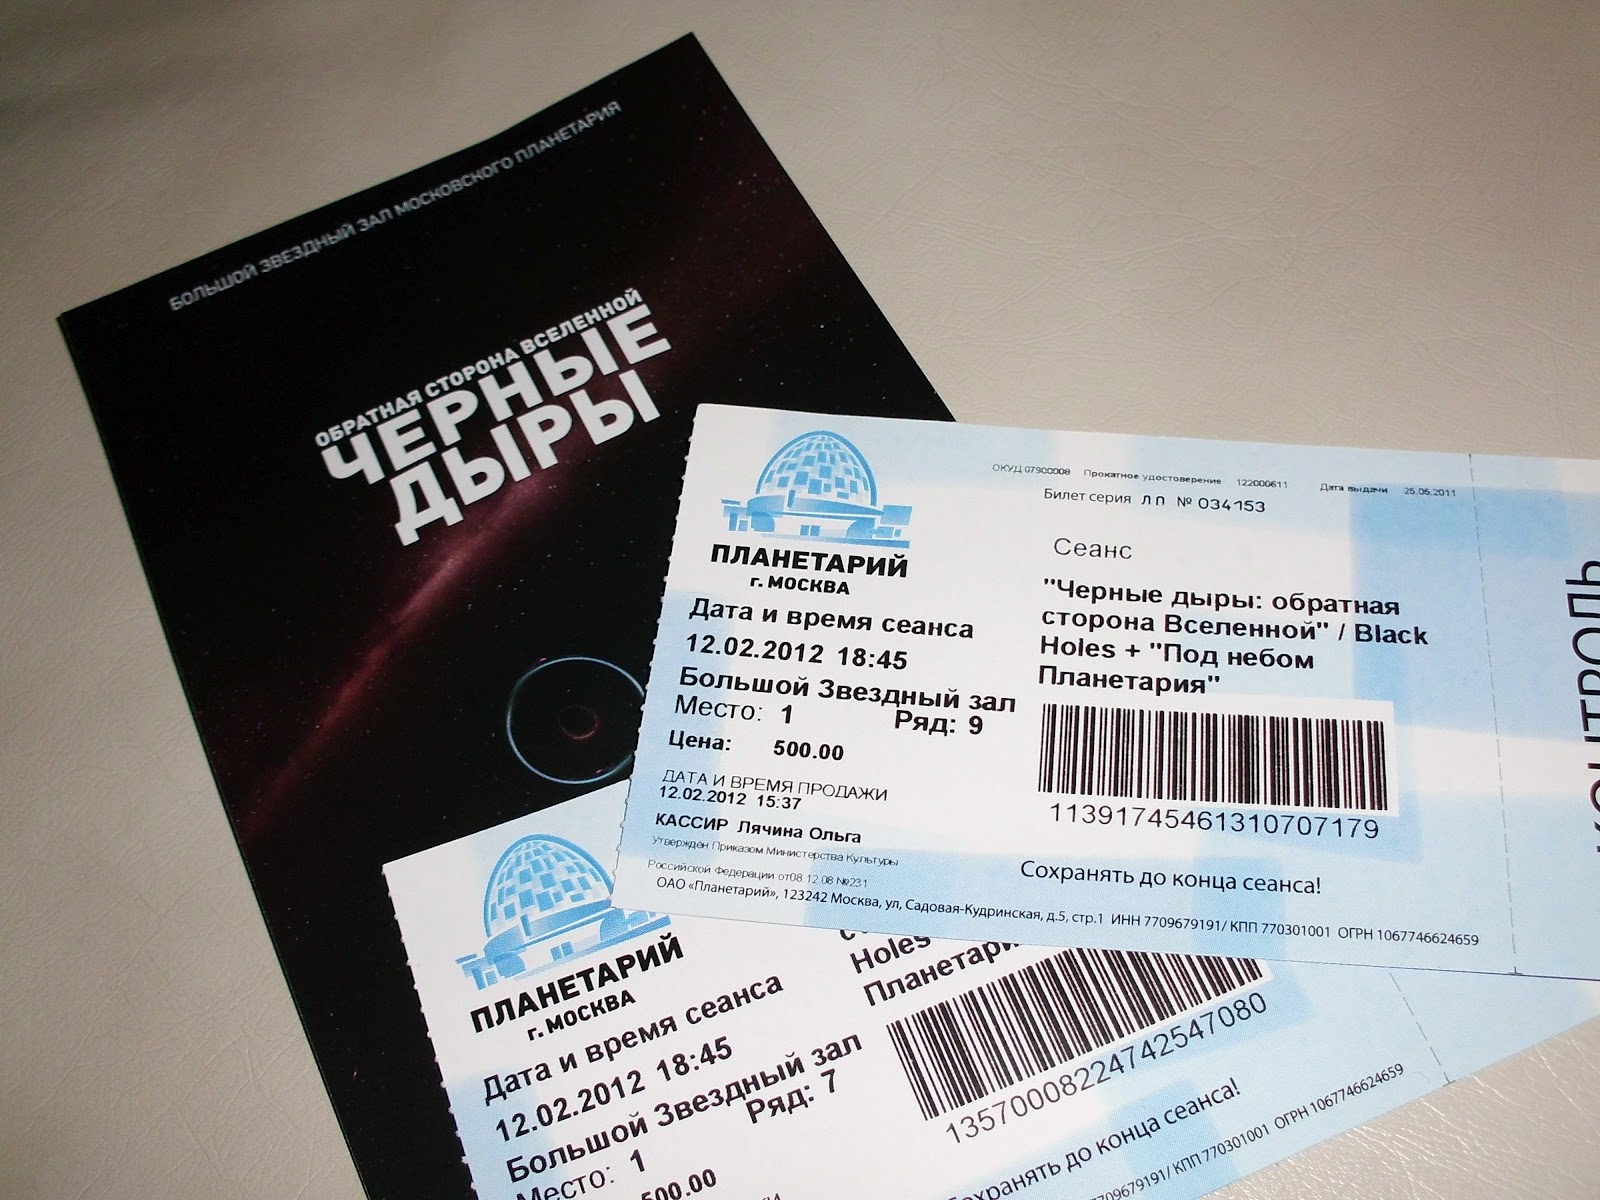 Планетарий спб билеты. Билет в планетарий. Большой Звездный зал Московского планетария.